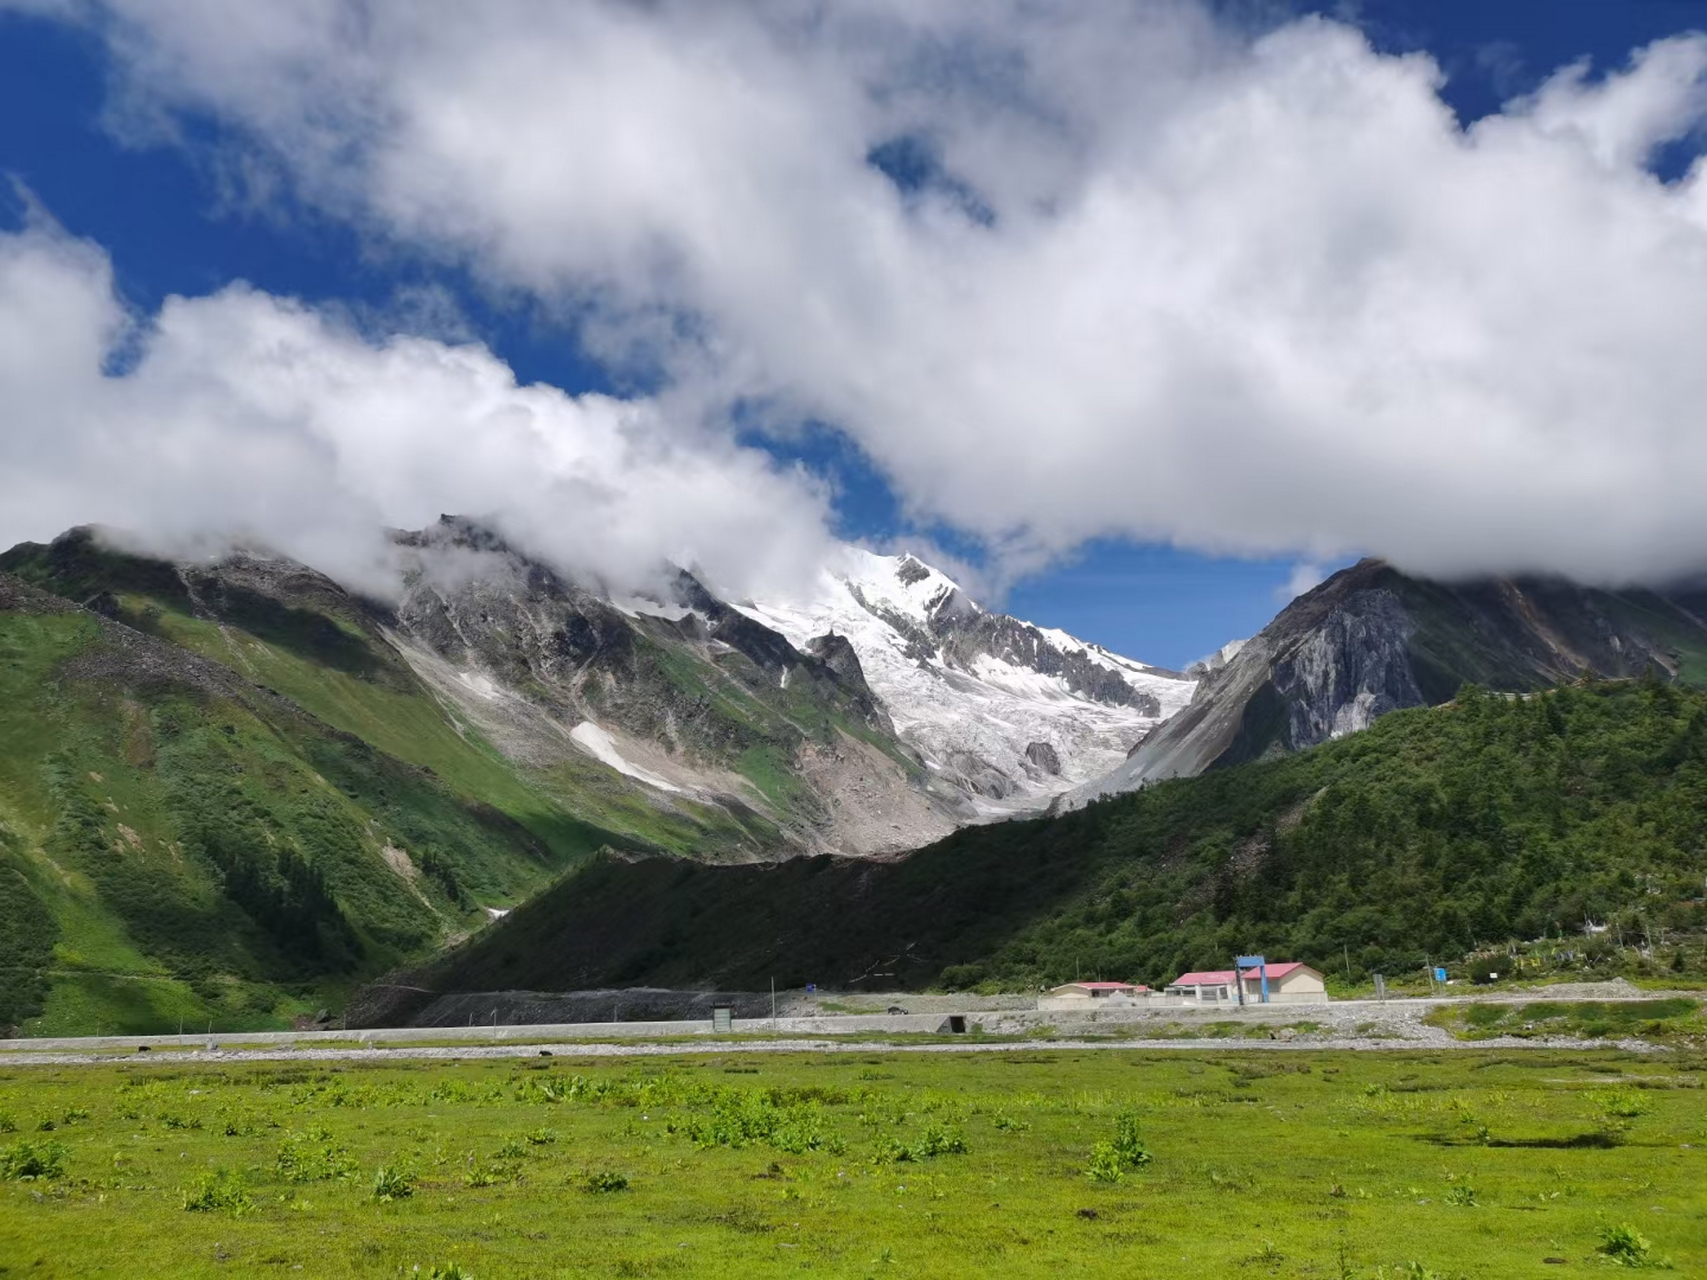 嘎隆拉雪山位于西藏林芝墨脱县与波密县交界处,被当地人称为神山